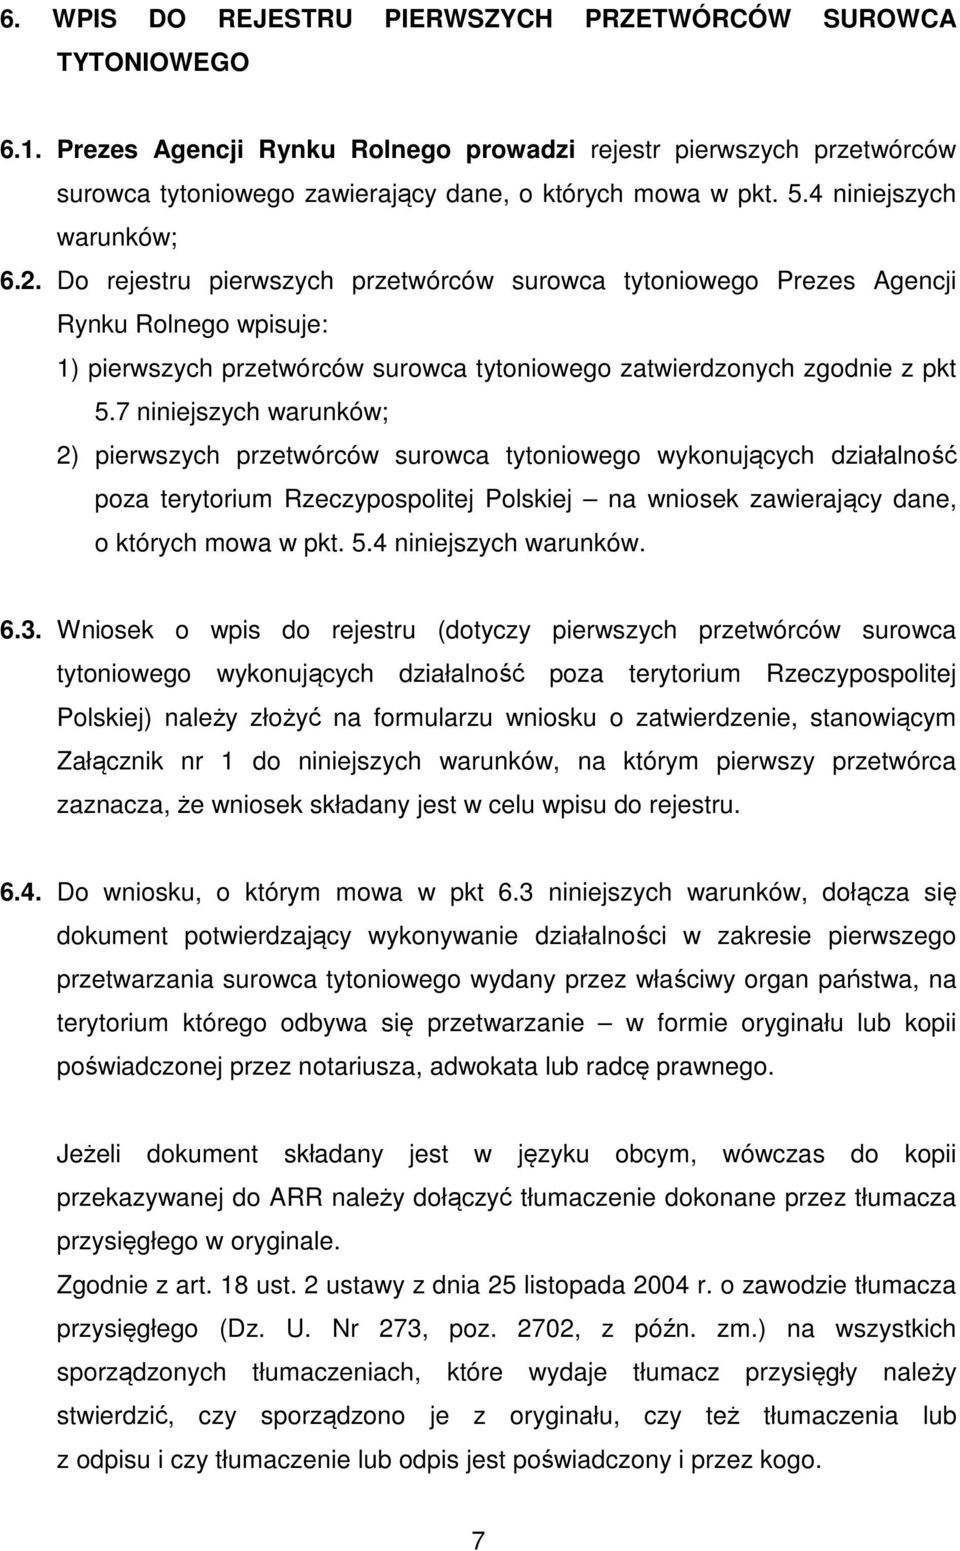 7 niniejszych warunków; 2) pierwszych przetwórców surowca tytoniowego wykonujących działalność poza terytorium Rzeczypospolitej Polskiej na wniosek zawierający dane, o których mowa w pkt. 5.